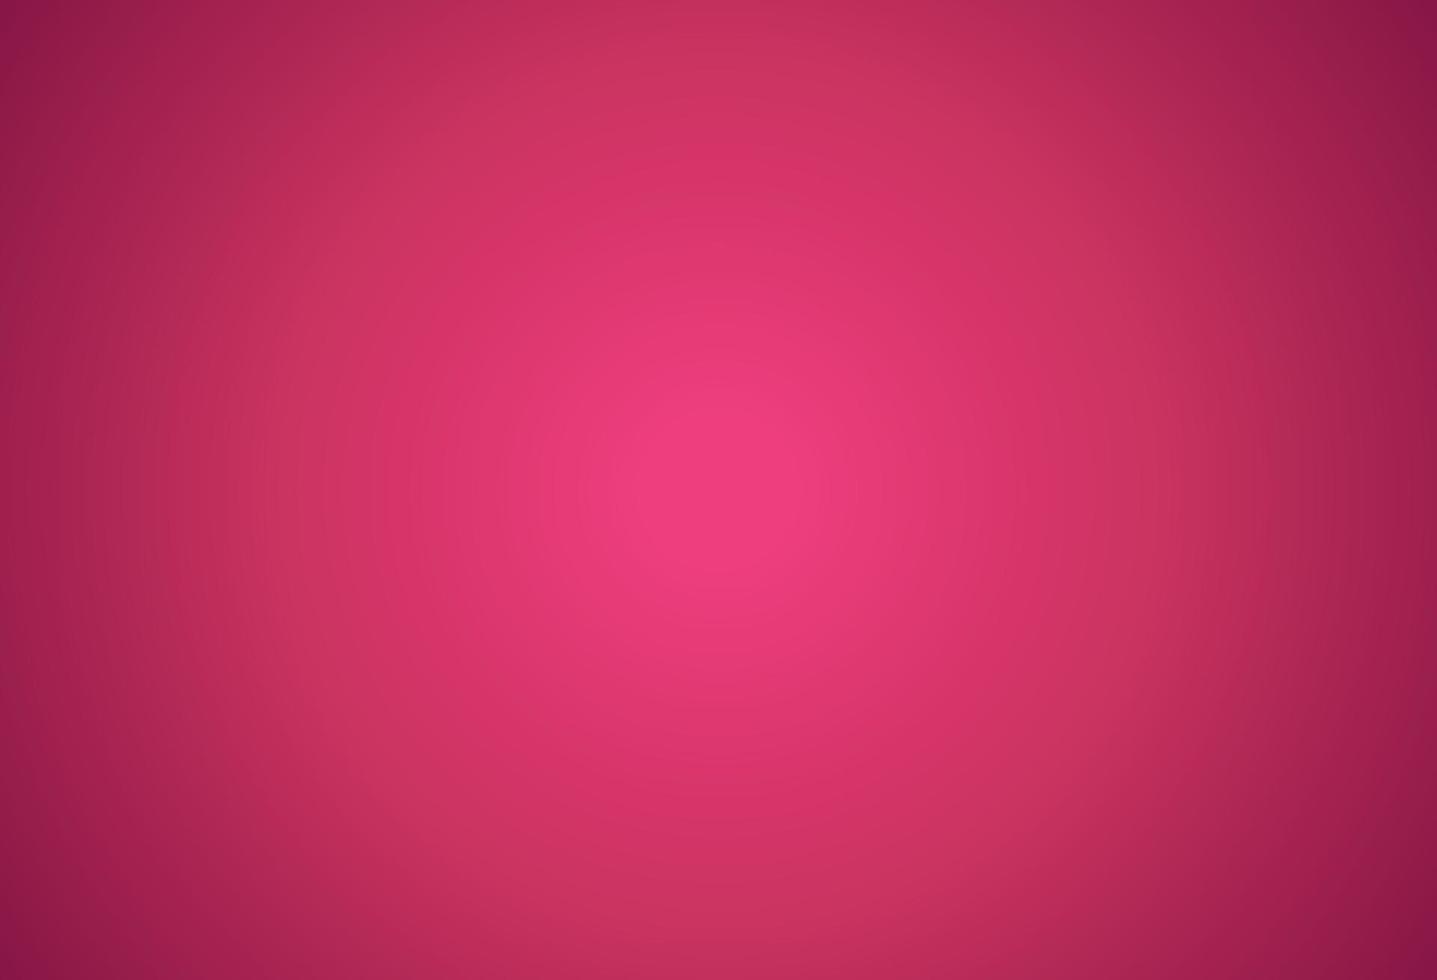 sfondo rosa illustrazione vettoriale effetto di luce grafico per testo e message board design infografica